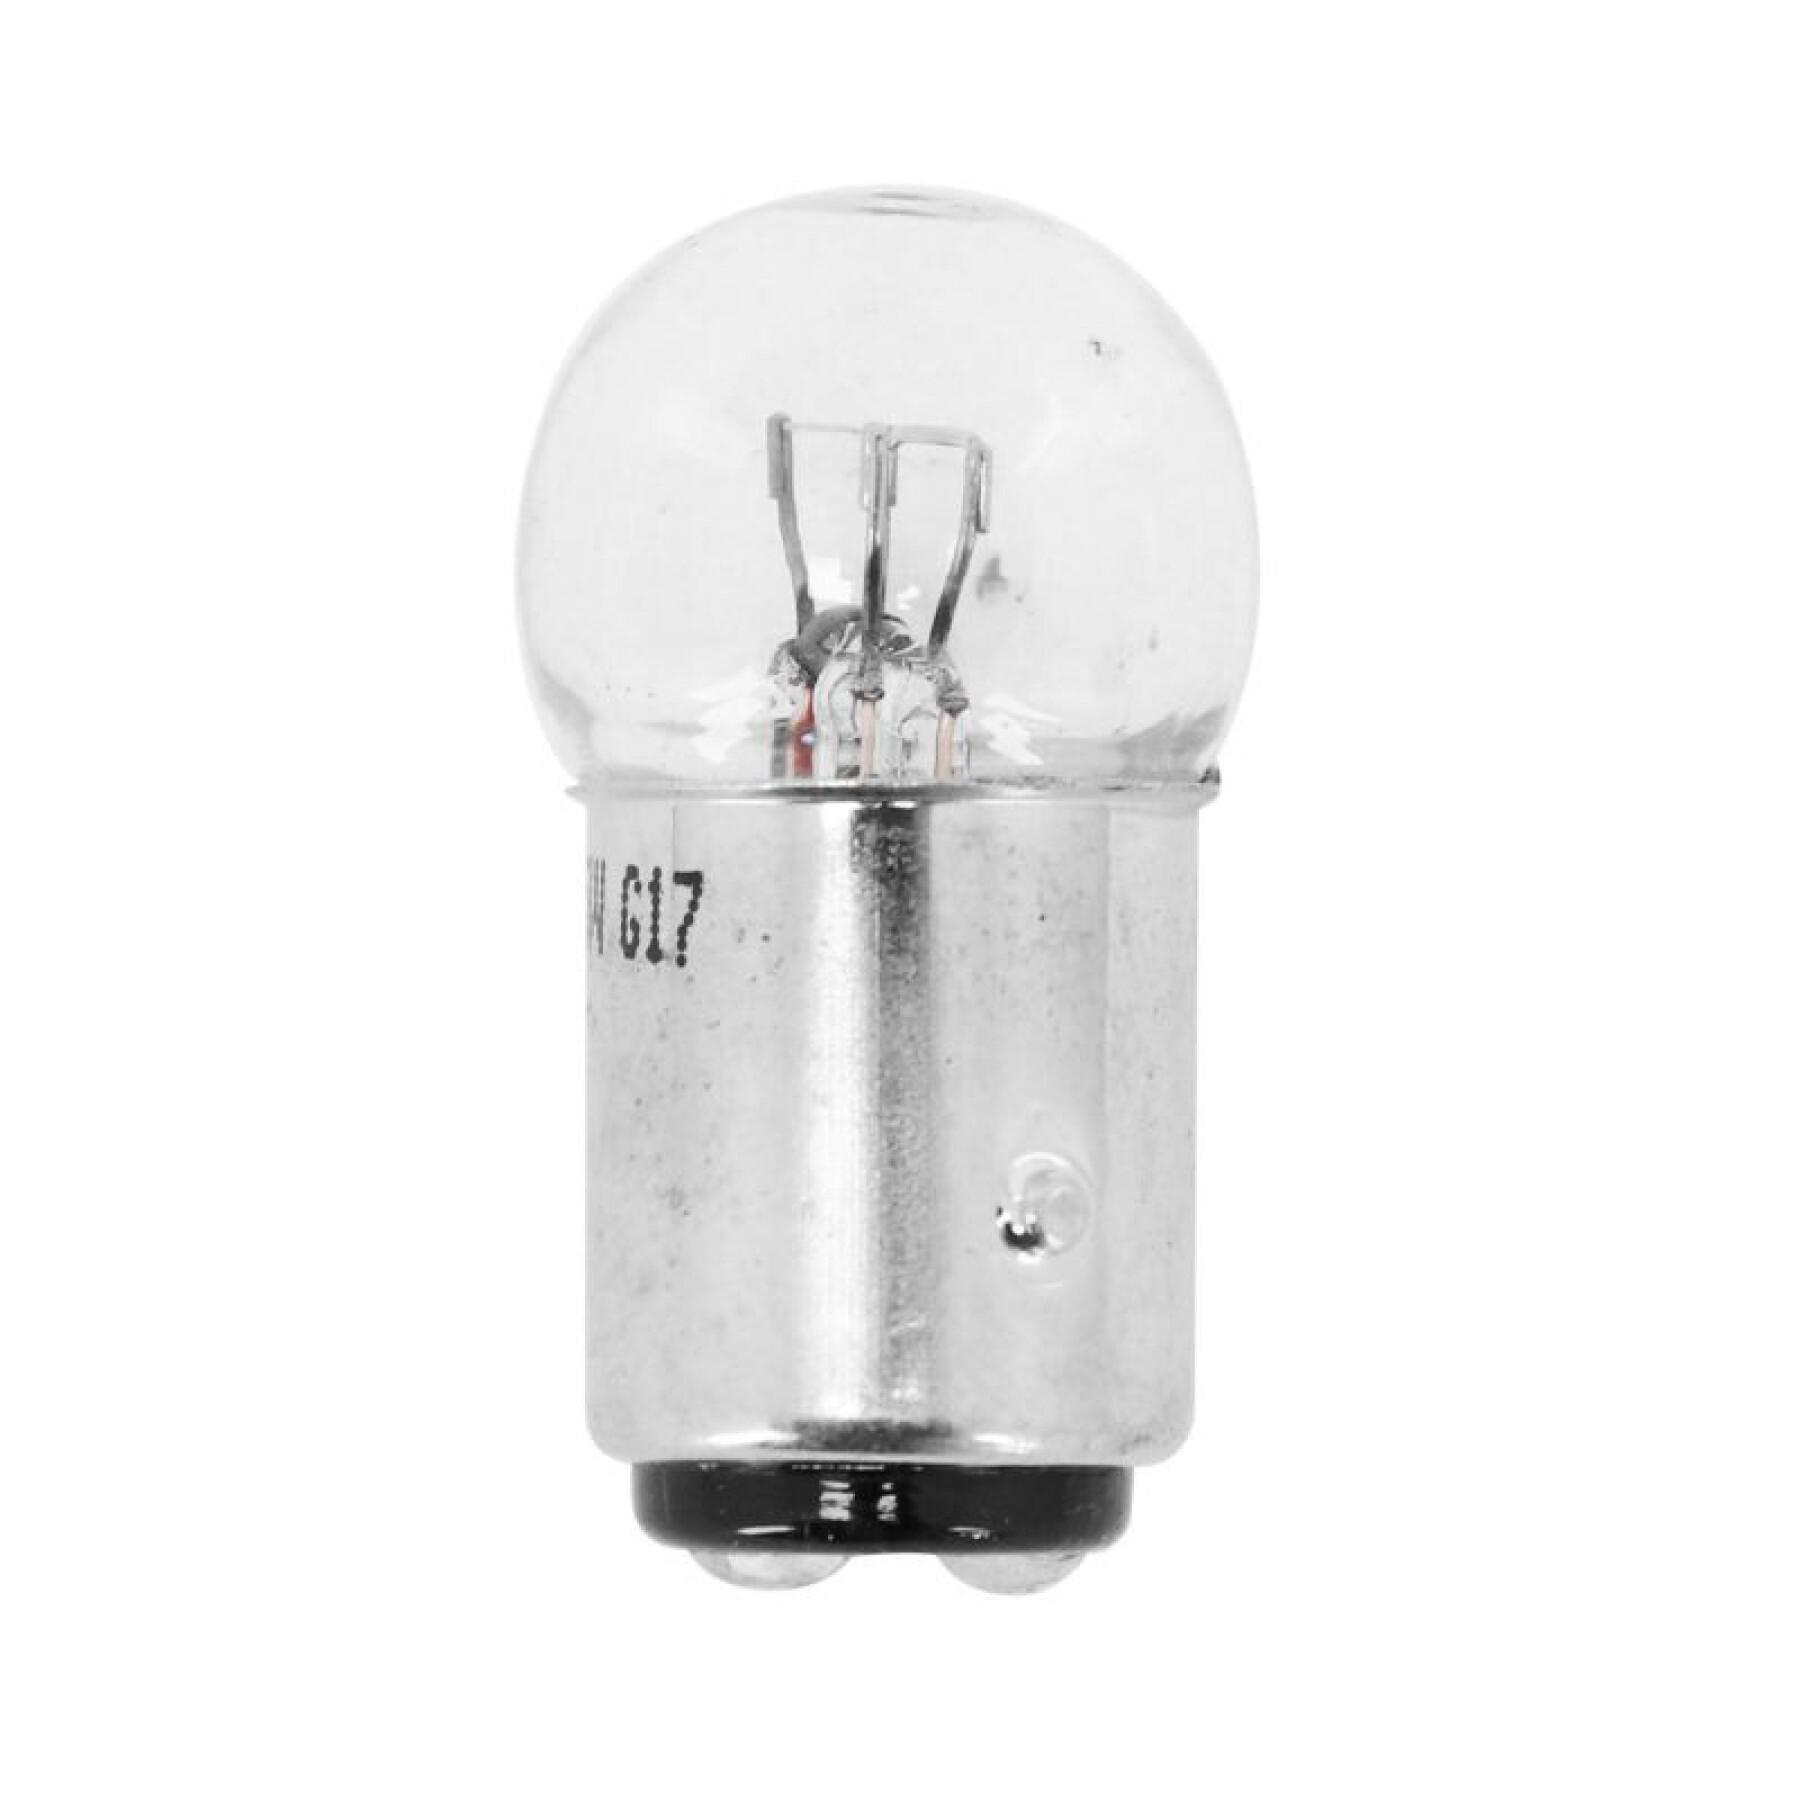 Standard bulb Flosser BAY15d P10-5W